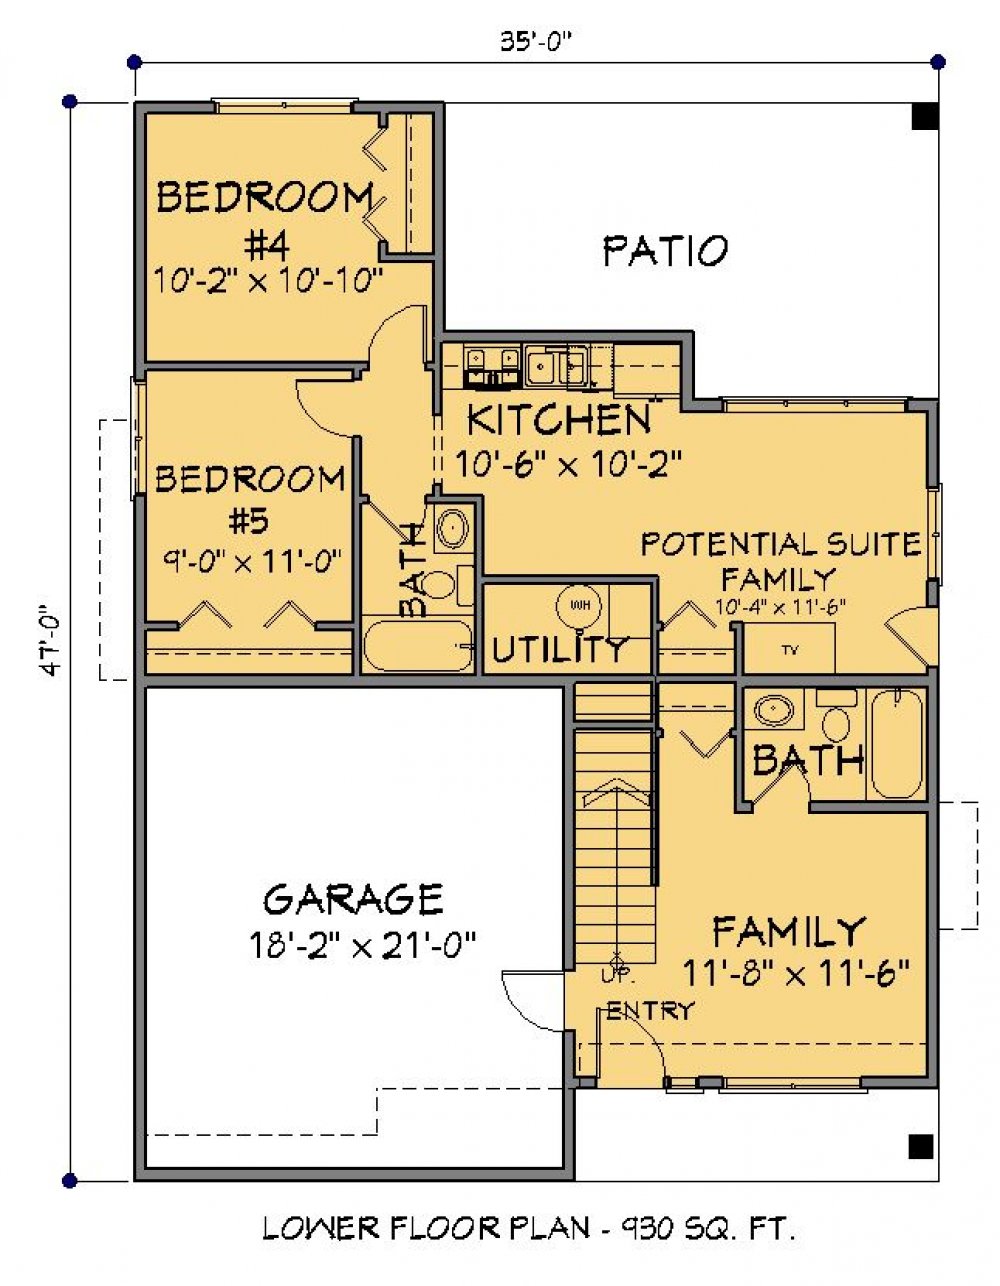 House Plan E1687-10  Lower Floor Plan